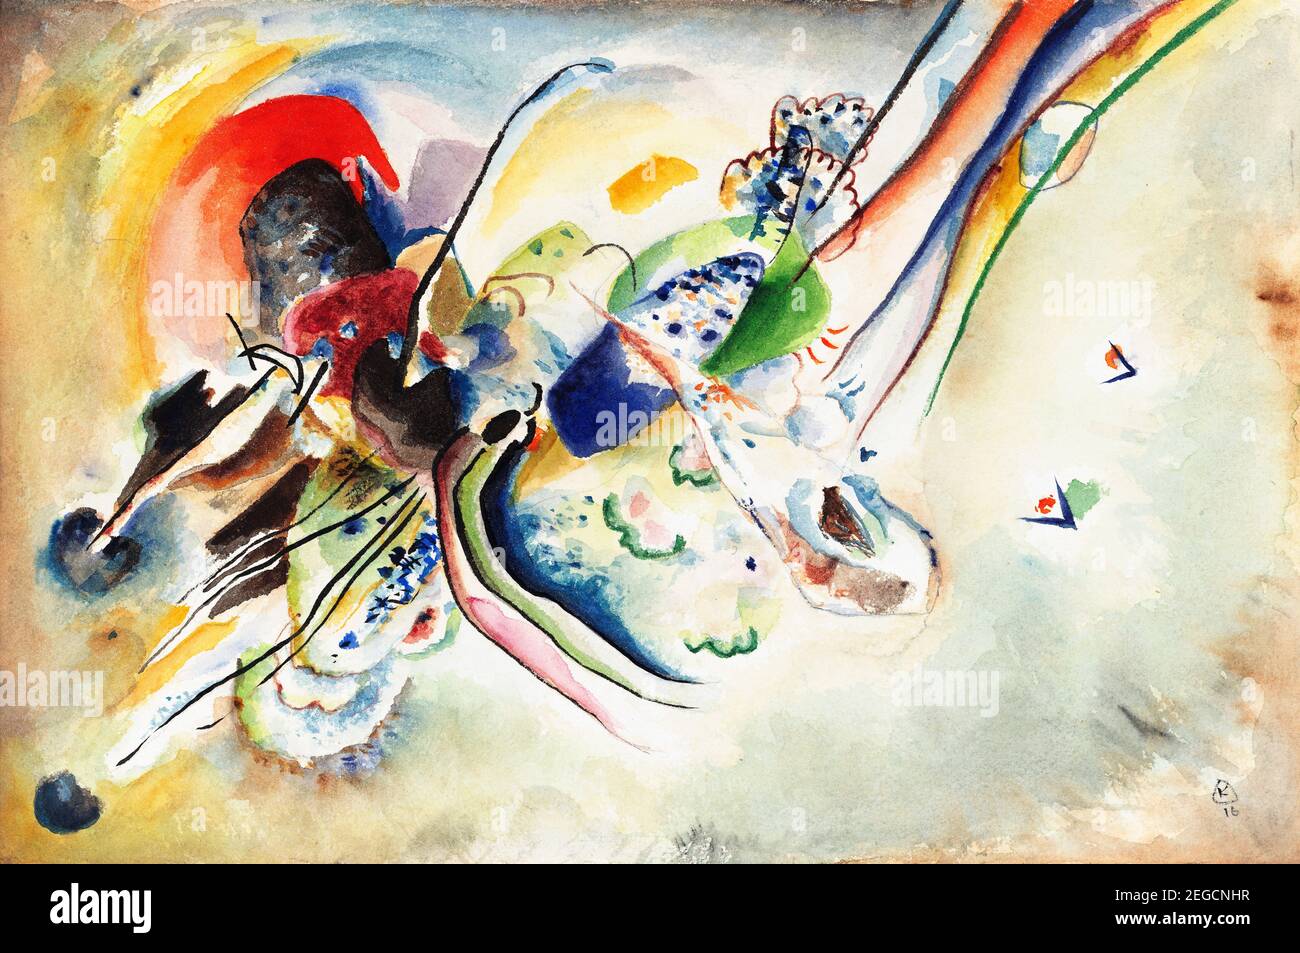 Kandinsky Malerei. Komposition (Studie für 'Bild mit zwei roten Flecken') von Wassily Kandinsky (1866-1944), Aquarell und Bleistift auf Papier, 1916 Stockfoto